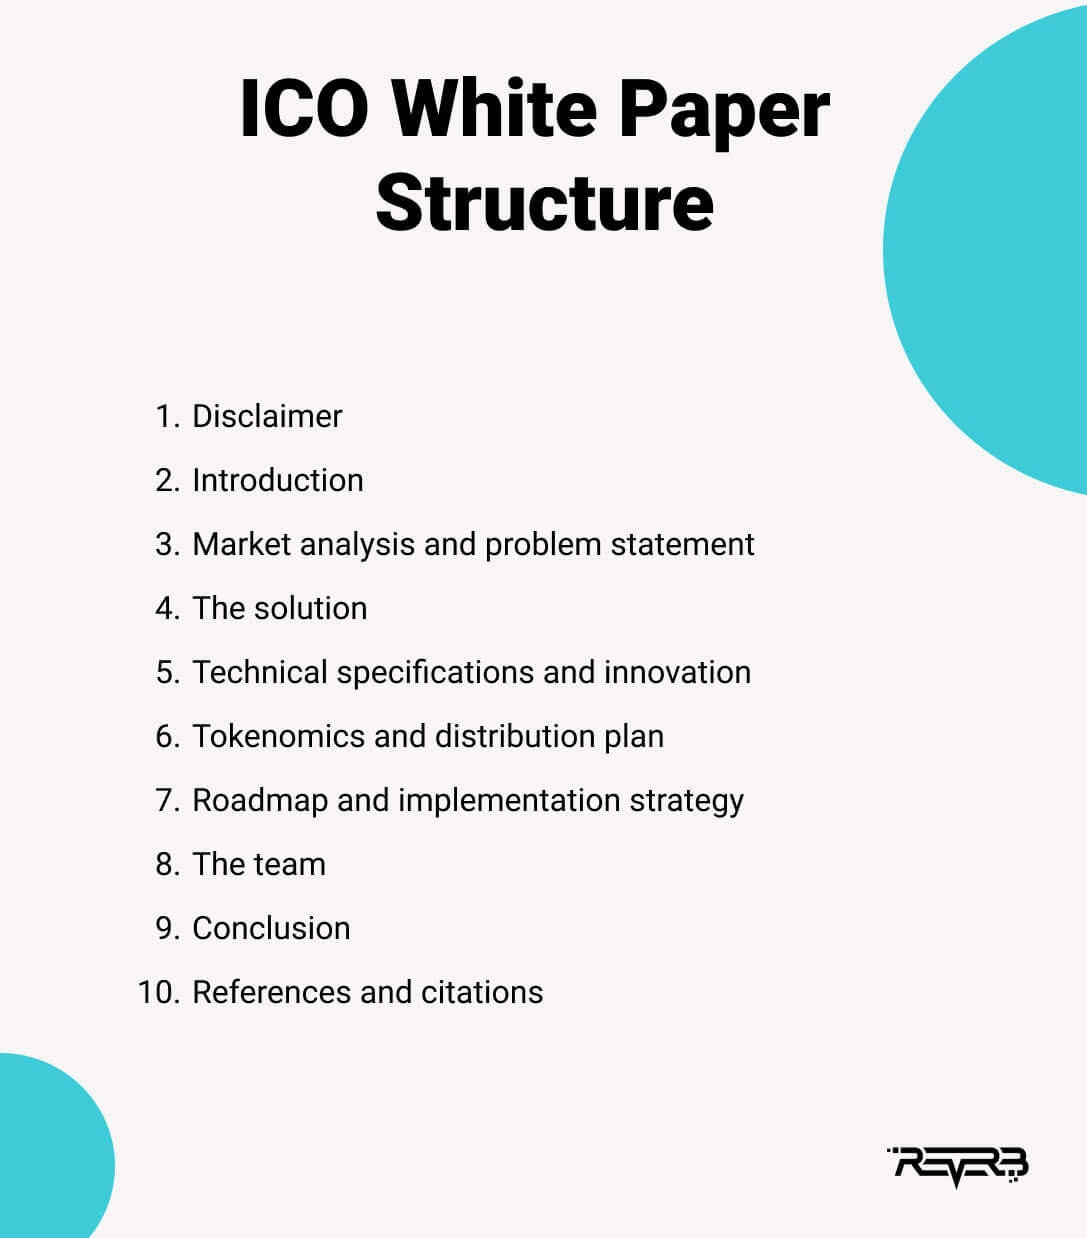 ICO white paper structure